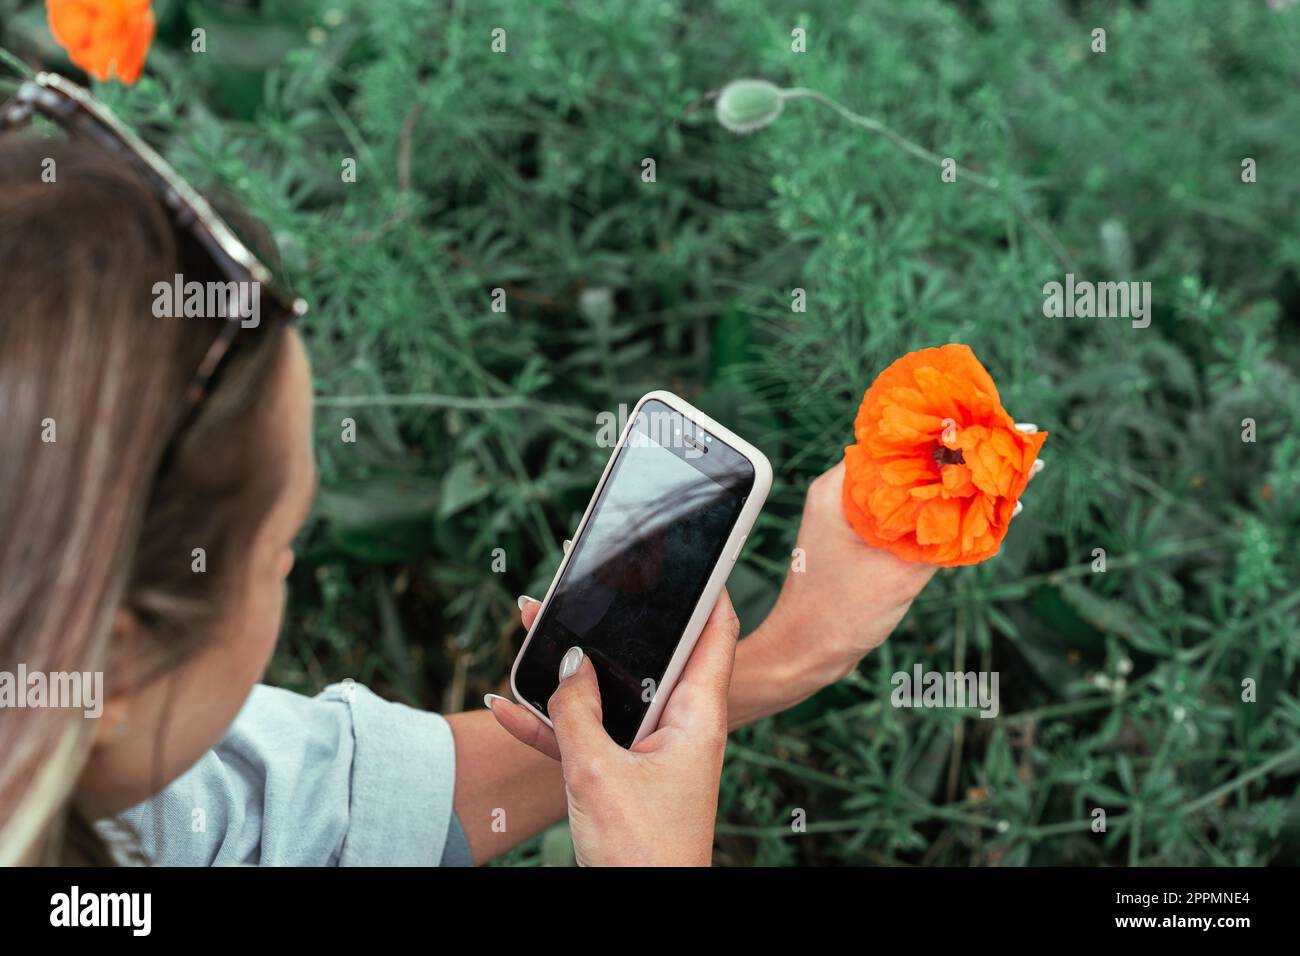 Eine Frau fotografiert eine Mohnblume mit einer Nahaufnahme auf ihrem Smartphone im Frühling Stockfoto